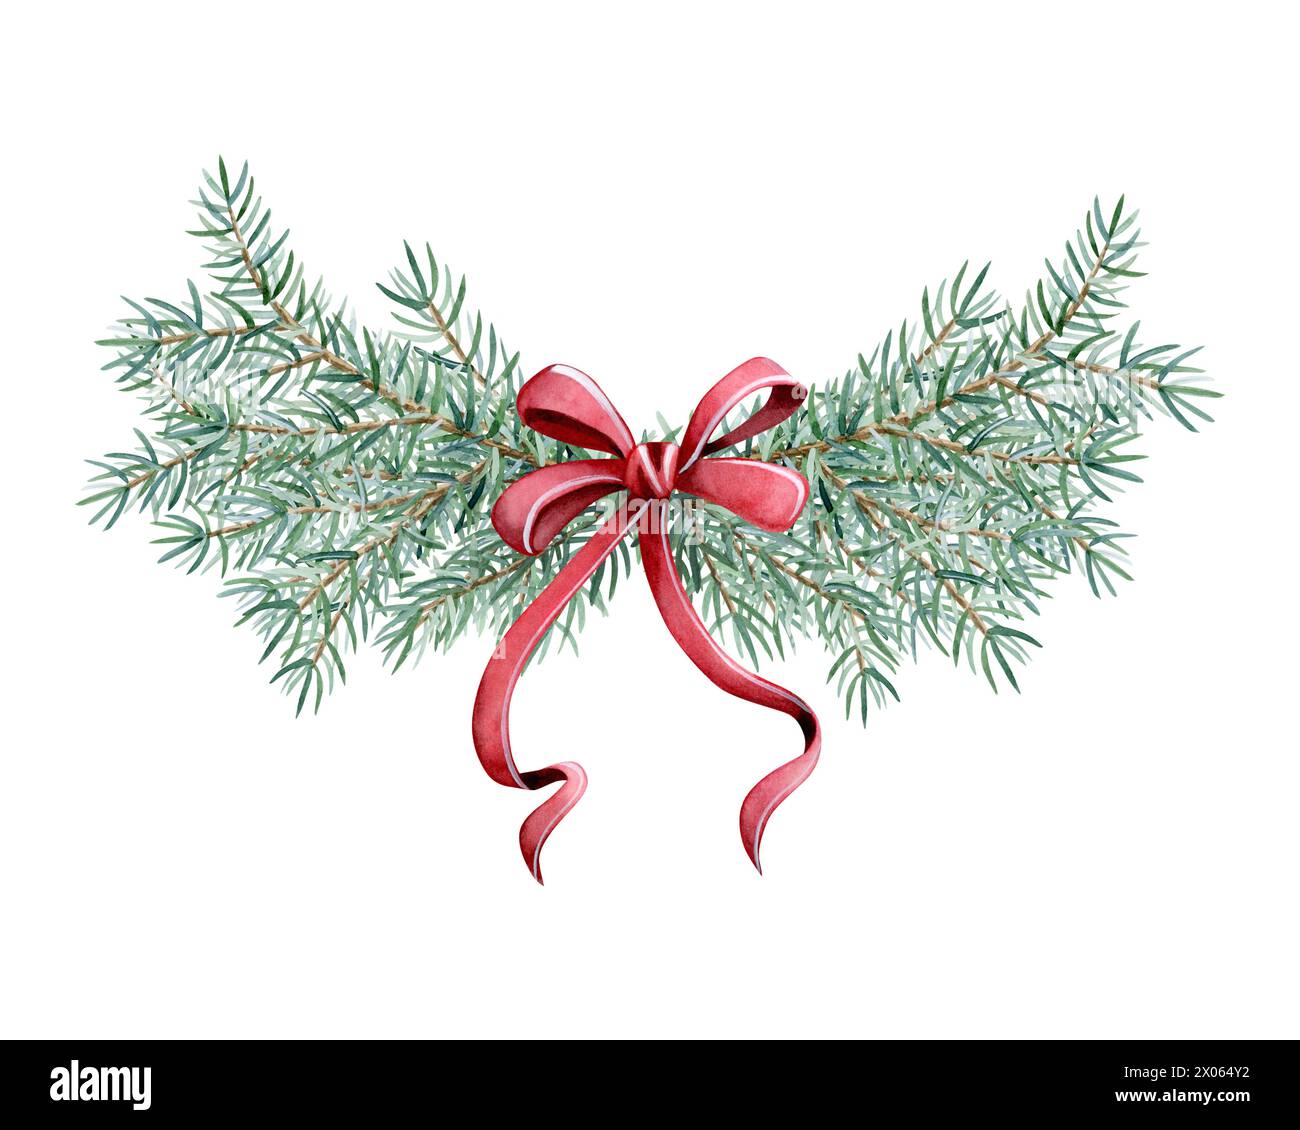 Weihnachtsbaumzweige Kranz mit roter Schleife Aquarell Illustration Vorlage für Winterfahnbanner, Grußkarte Stockfoto